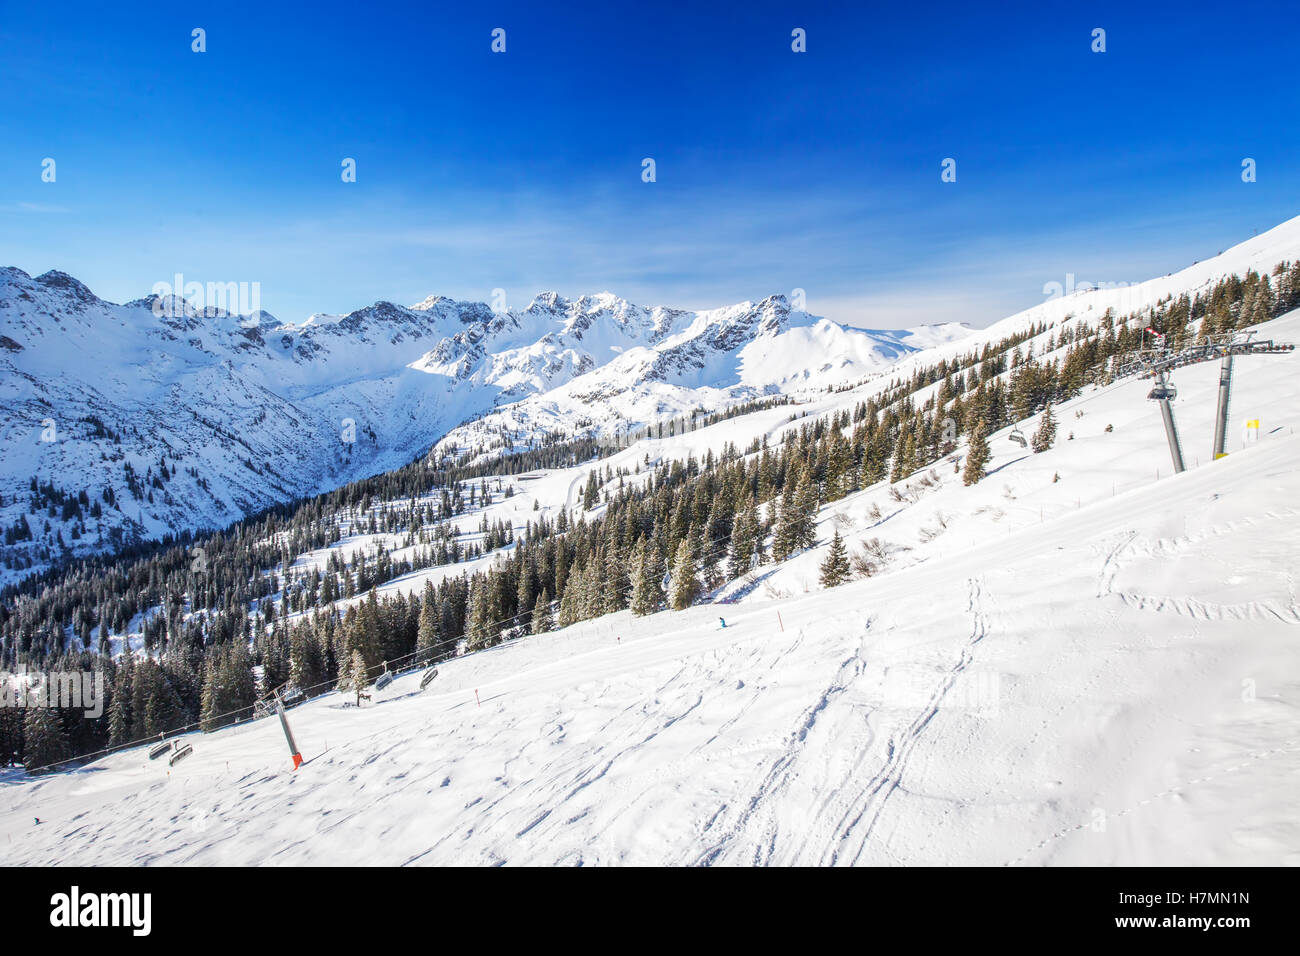 Pistas de esquí con el patrón de pana y telesillas de esquí en la parte superior de Fellhorn Ski Resort, Alpes bávaros, Oberstdorf, Alemania Foto de stock